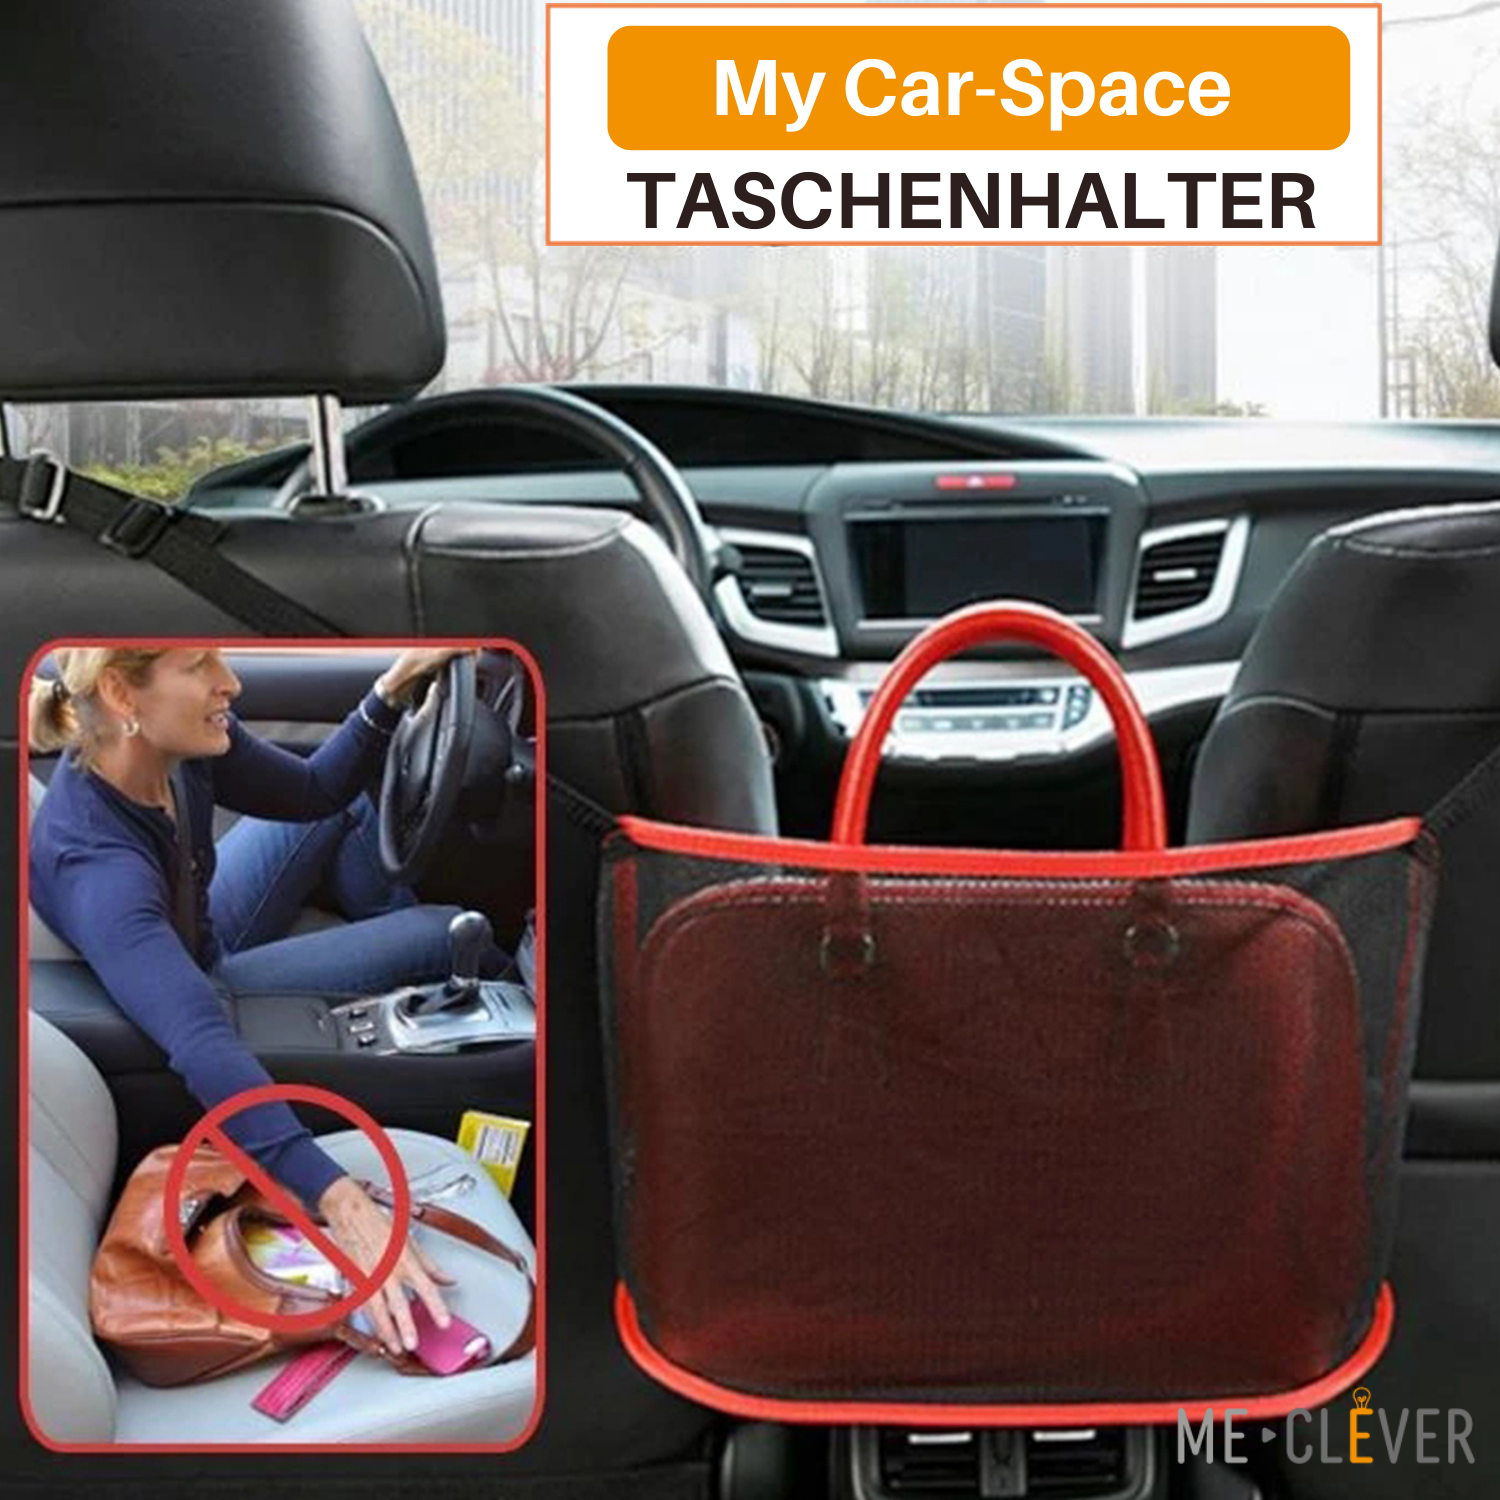 My Car-Space Taschenhalter - griffsicher für eine sichere Fahrt (40% Rabatt)